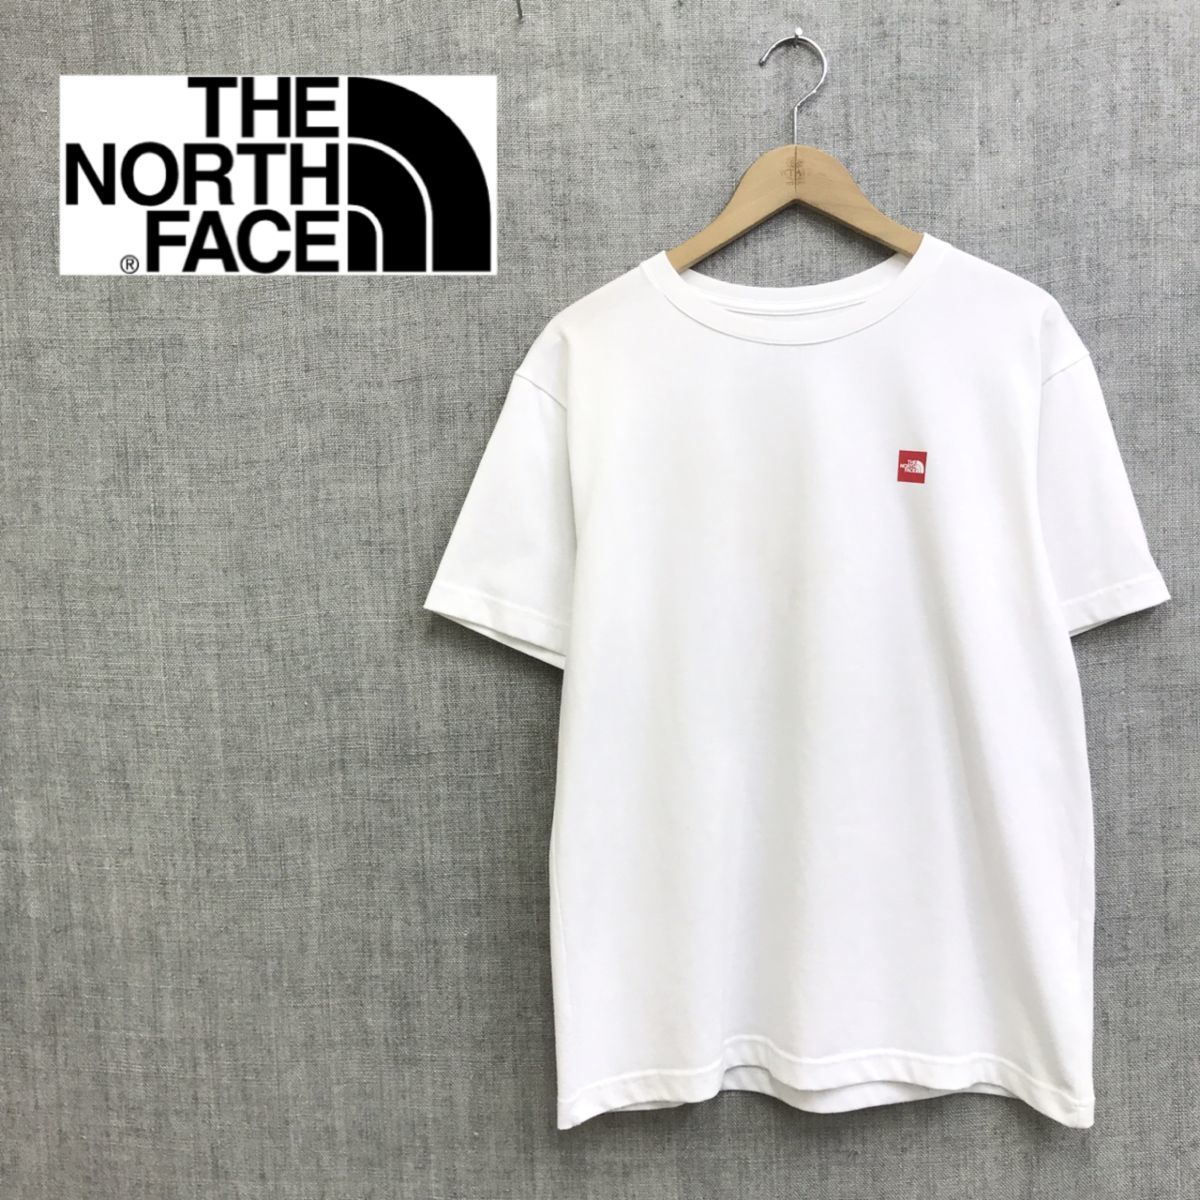 S1080 O The North Face ノースフェイス ロゴプリントtシャツ Sizel ホワイト 白 アウトドア ワンポイント 半袖 トップス メンズ 最大69 Offクーポン